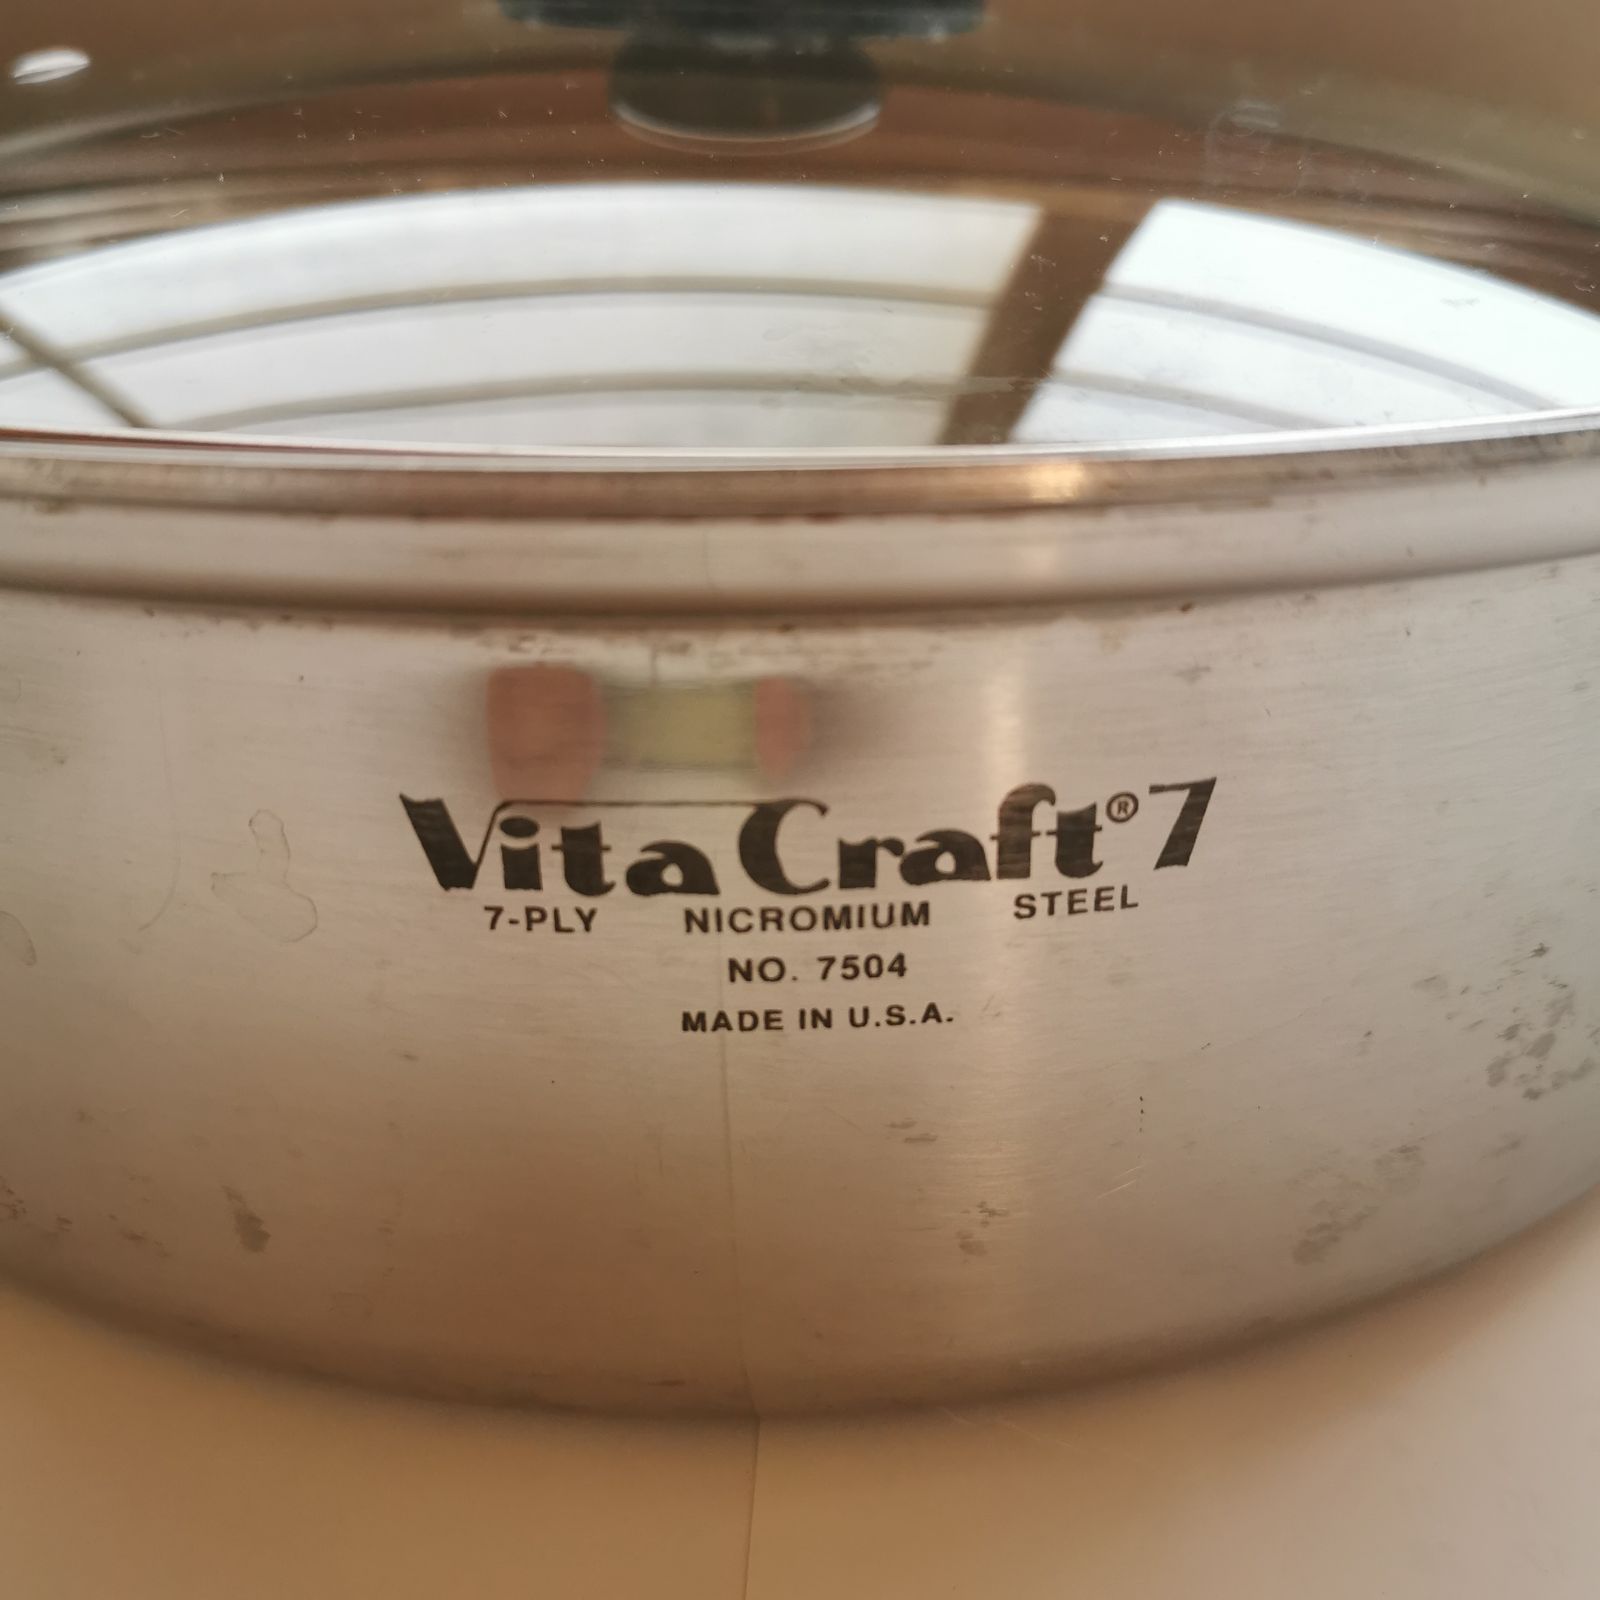 Vita Craft ビタクラフトセブン 両手鍋 4.0L No.7504 IH対応品 USED 